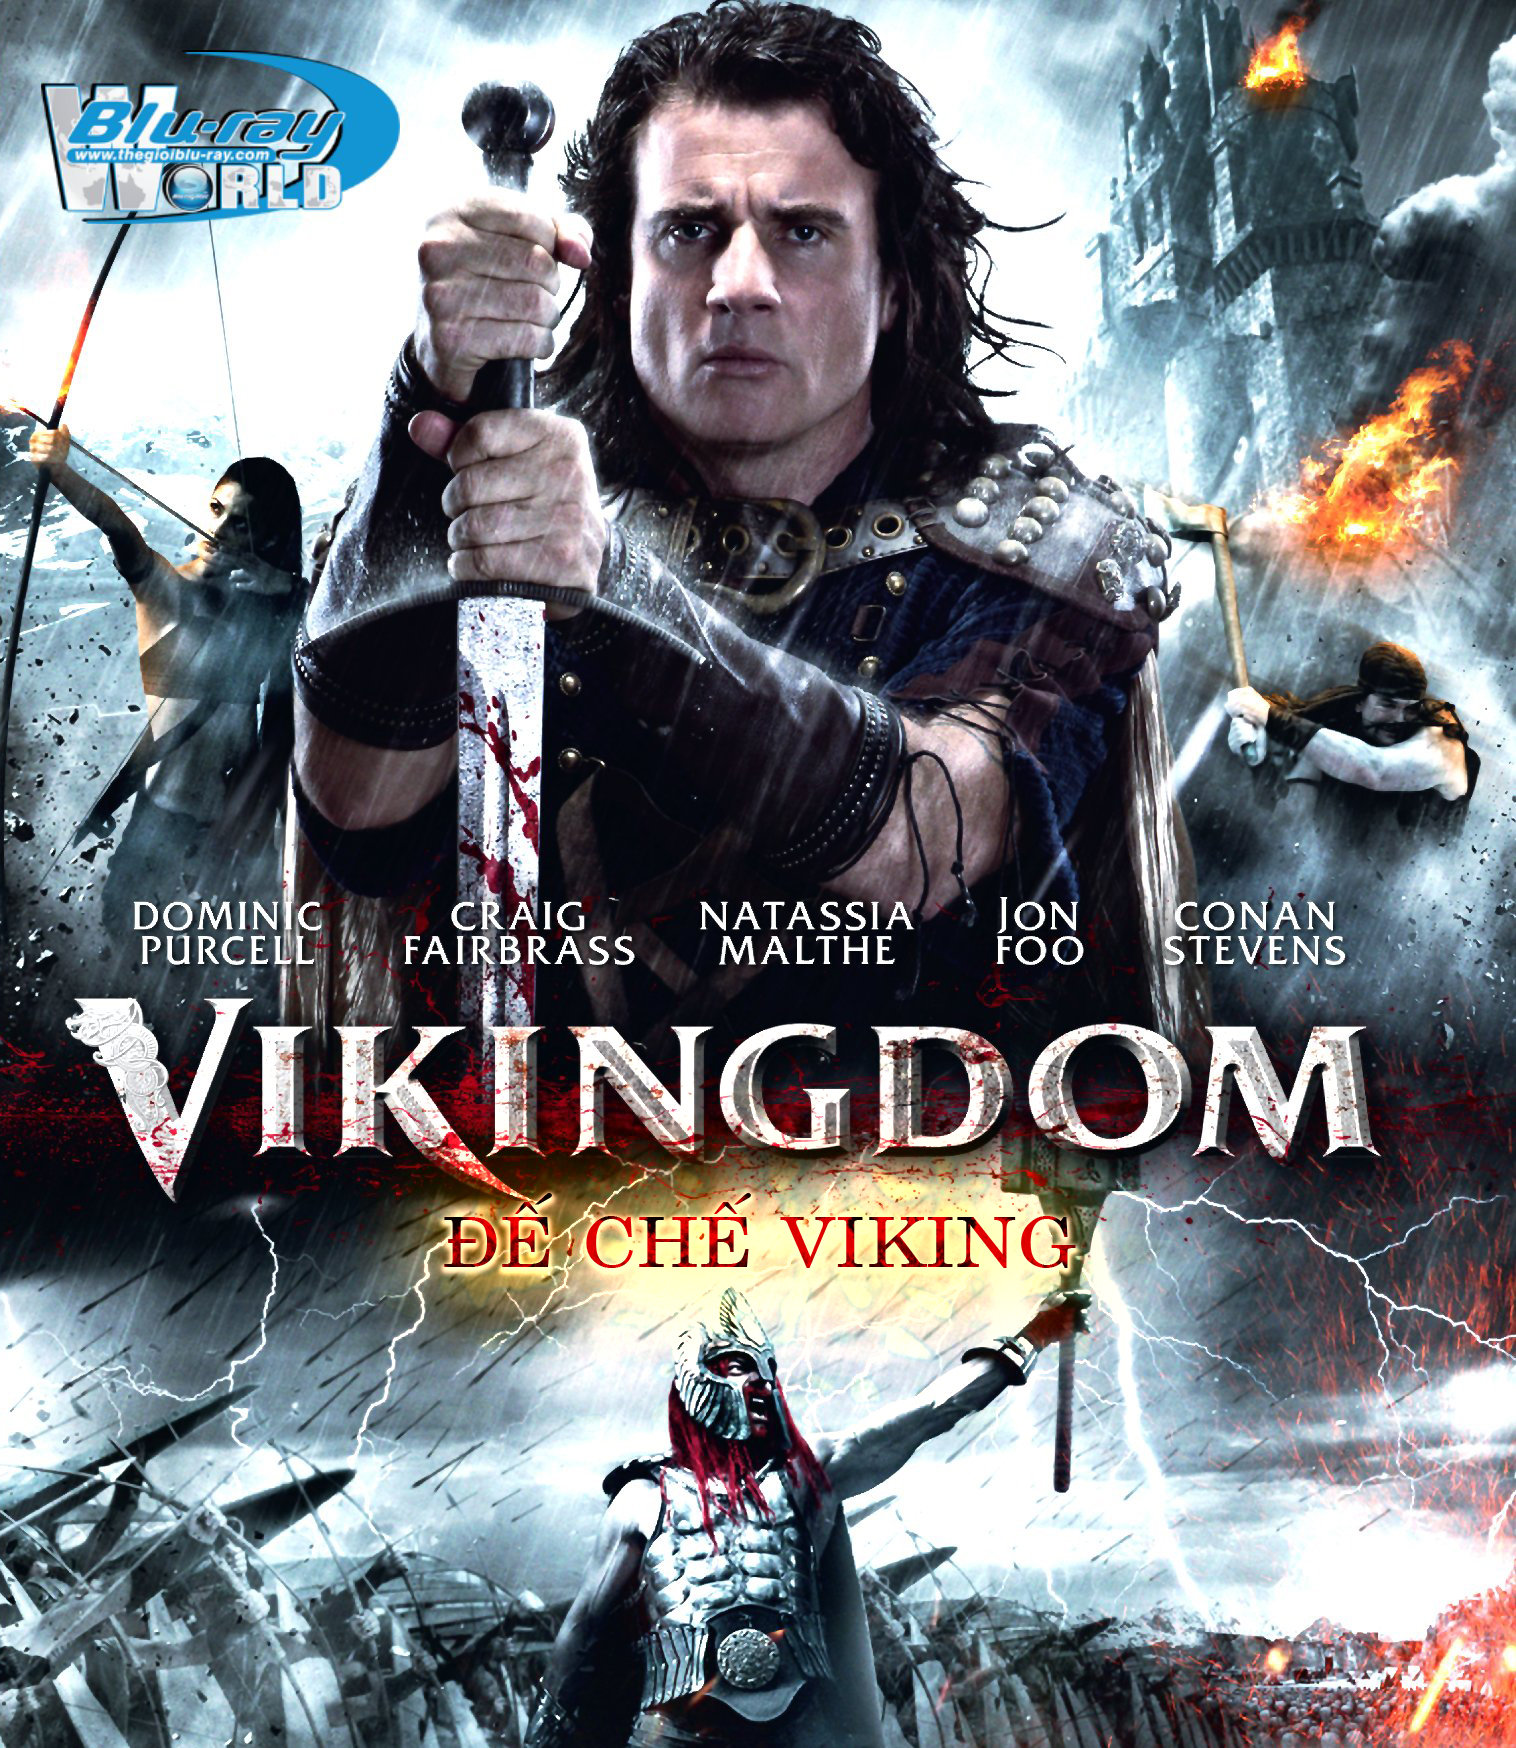 B1695. Vikingdom - ĐẾ CHẾ VIKING 2D 25G (DTS-HD MA 5.1)